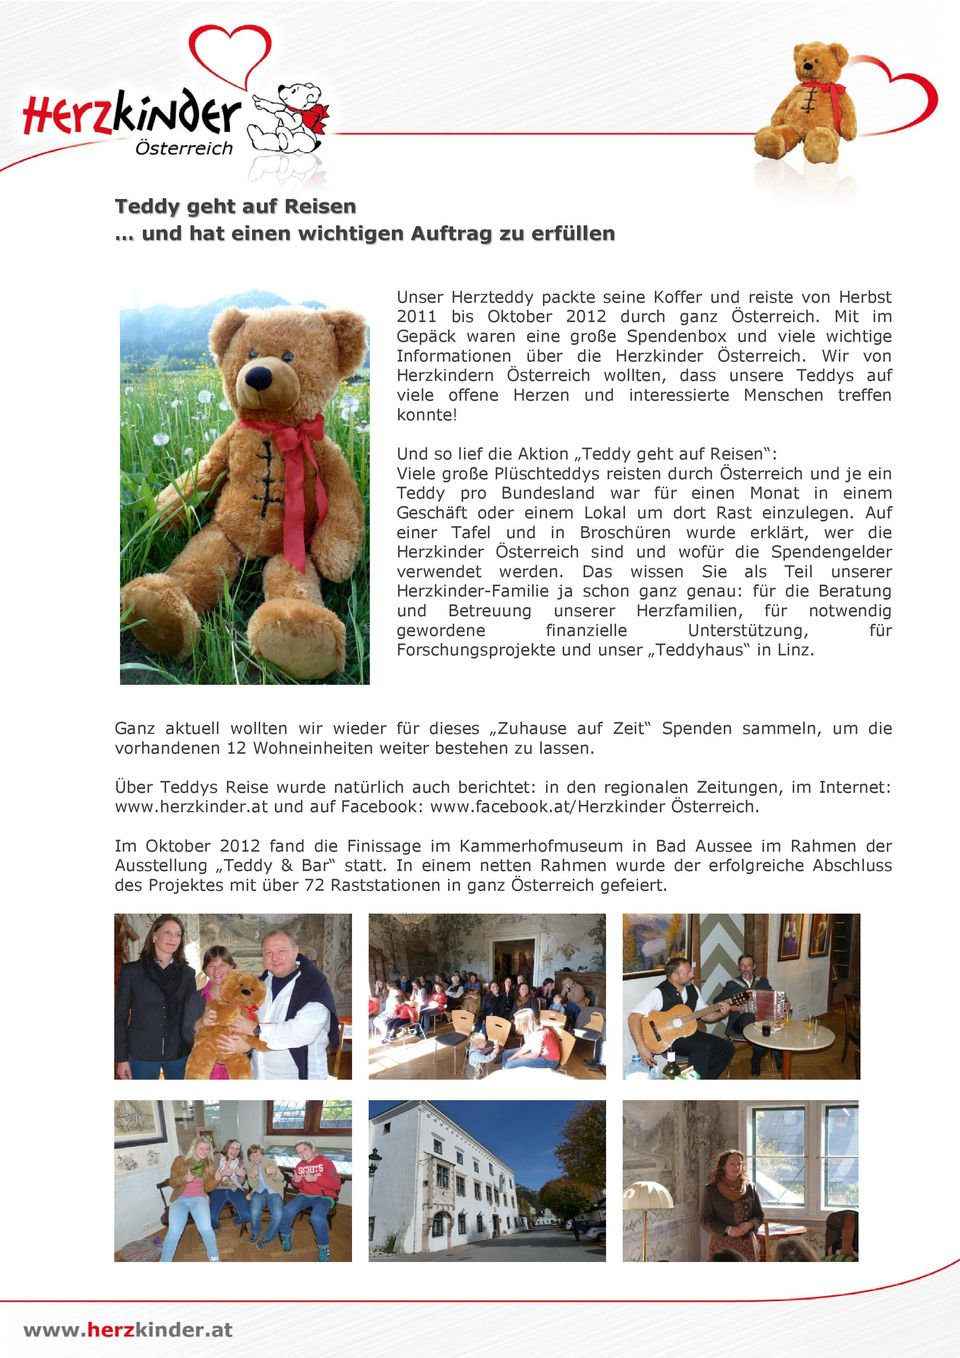 Wir von Herzkindern Österreich wollten, dass unsere Teddys auf viele offene Herzen und interessierte Menschen treffen konnte!